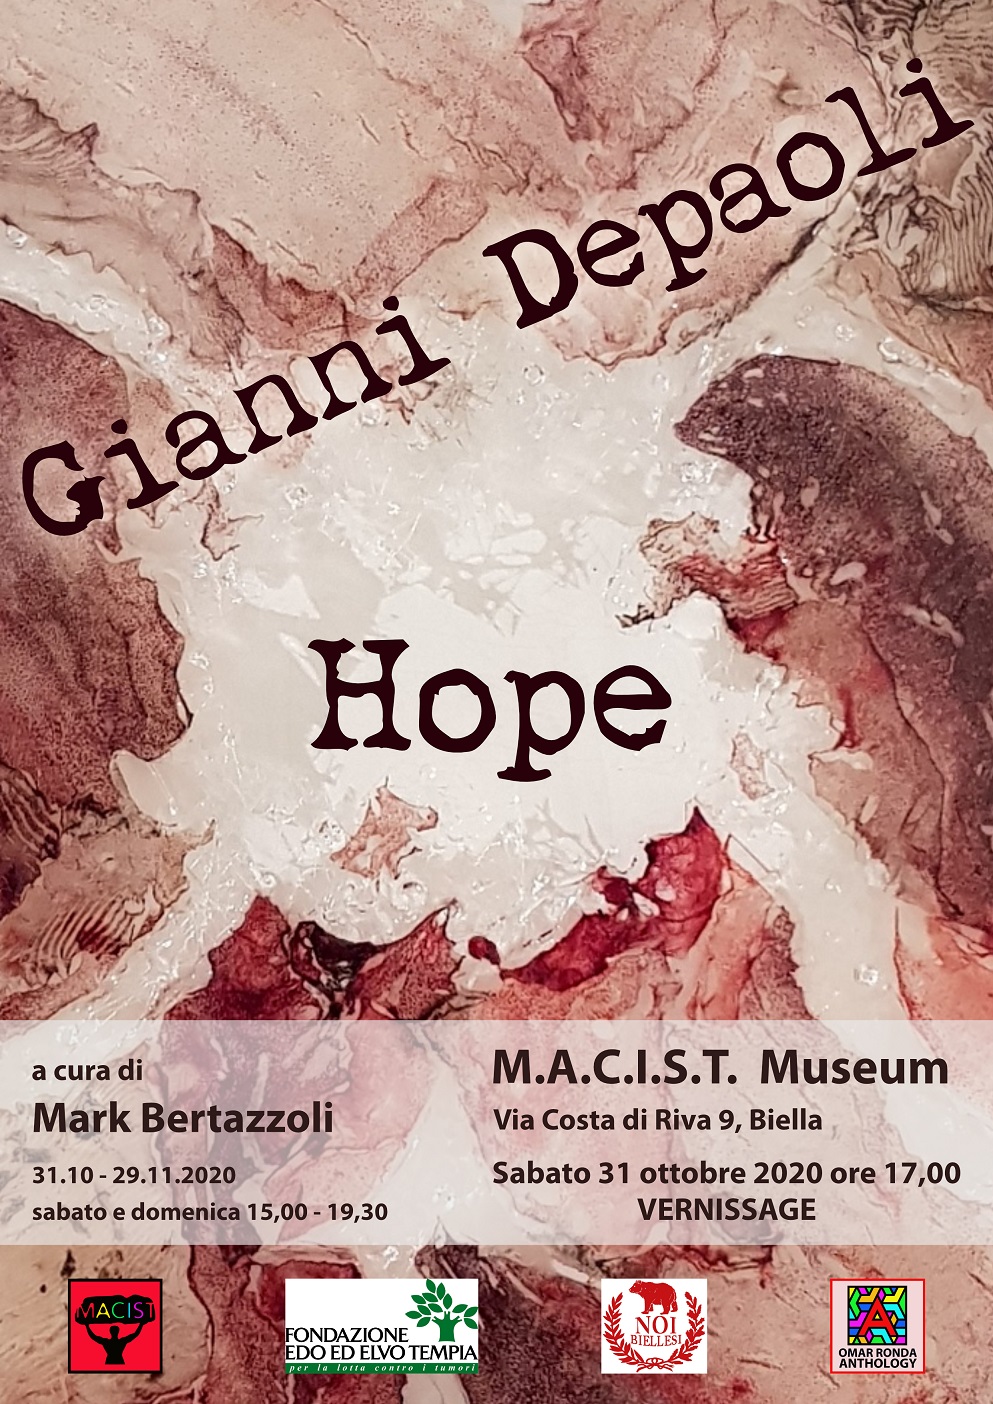 Gianni Depaoli - Hope